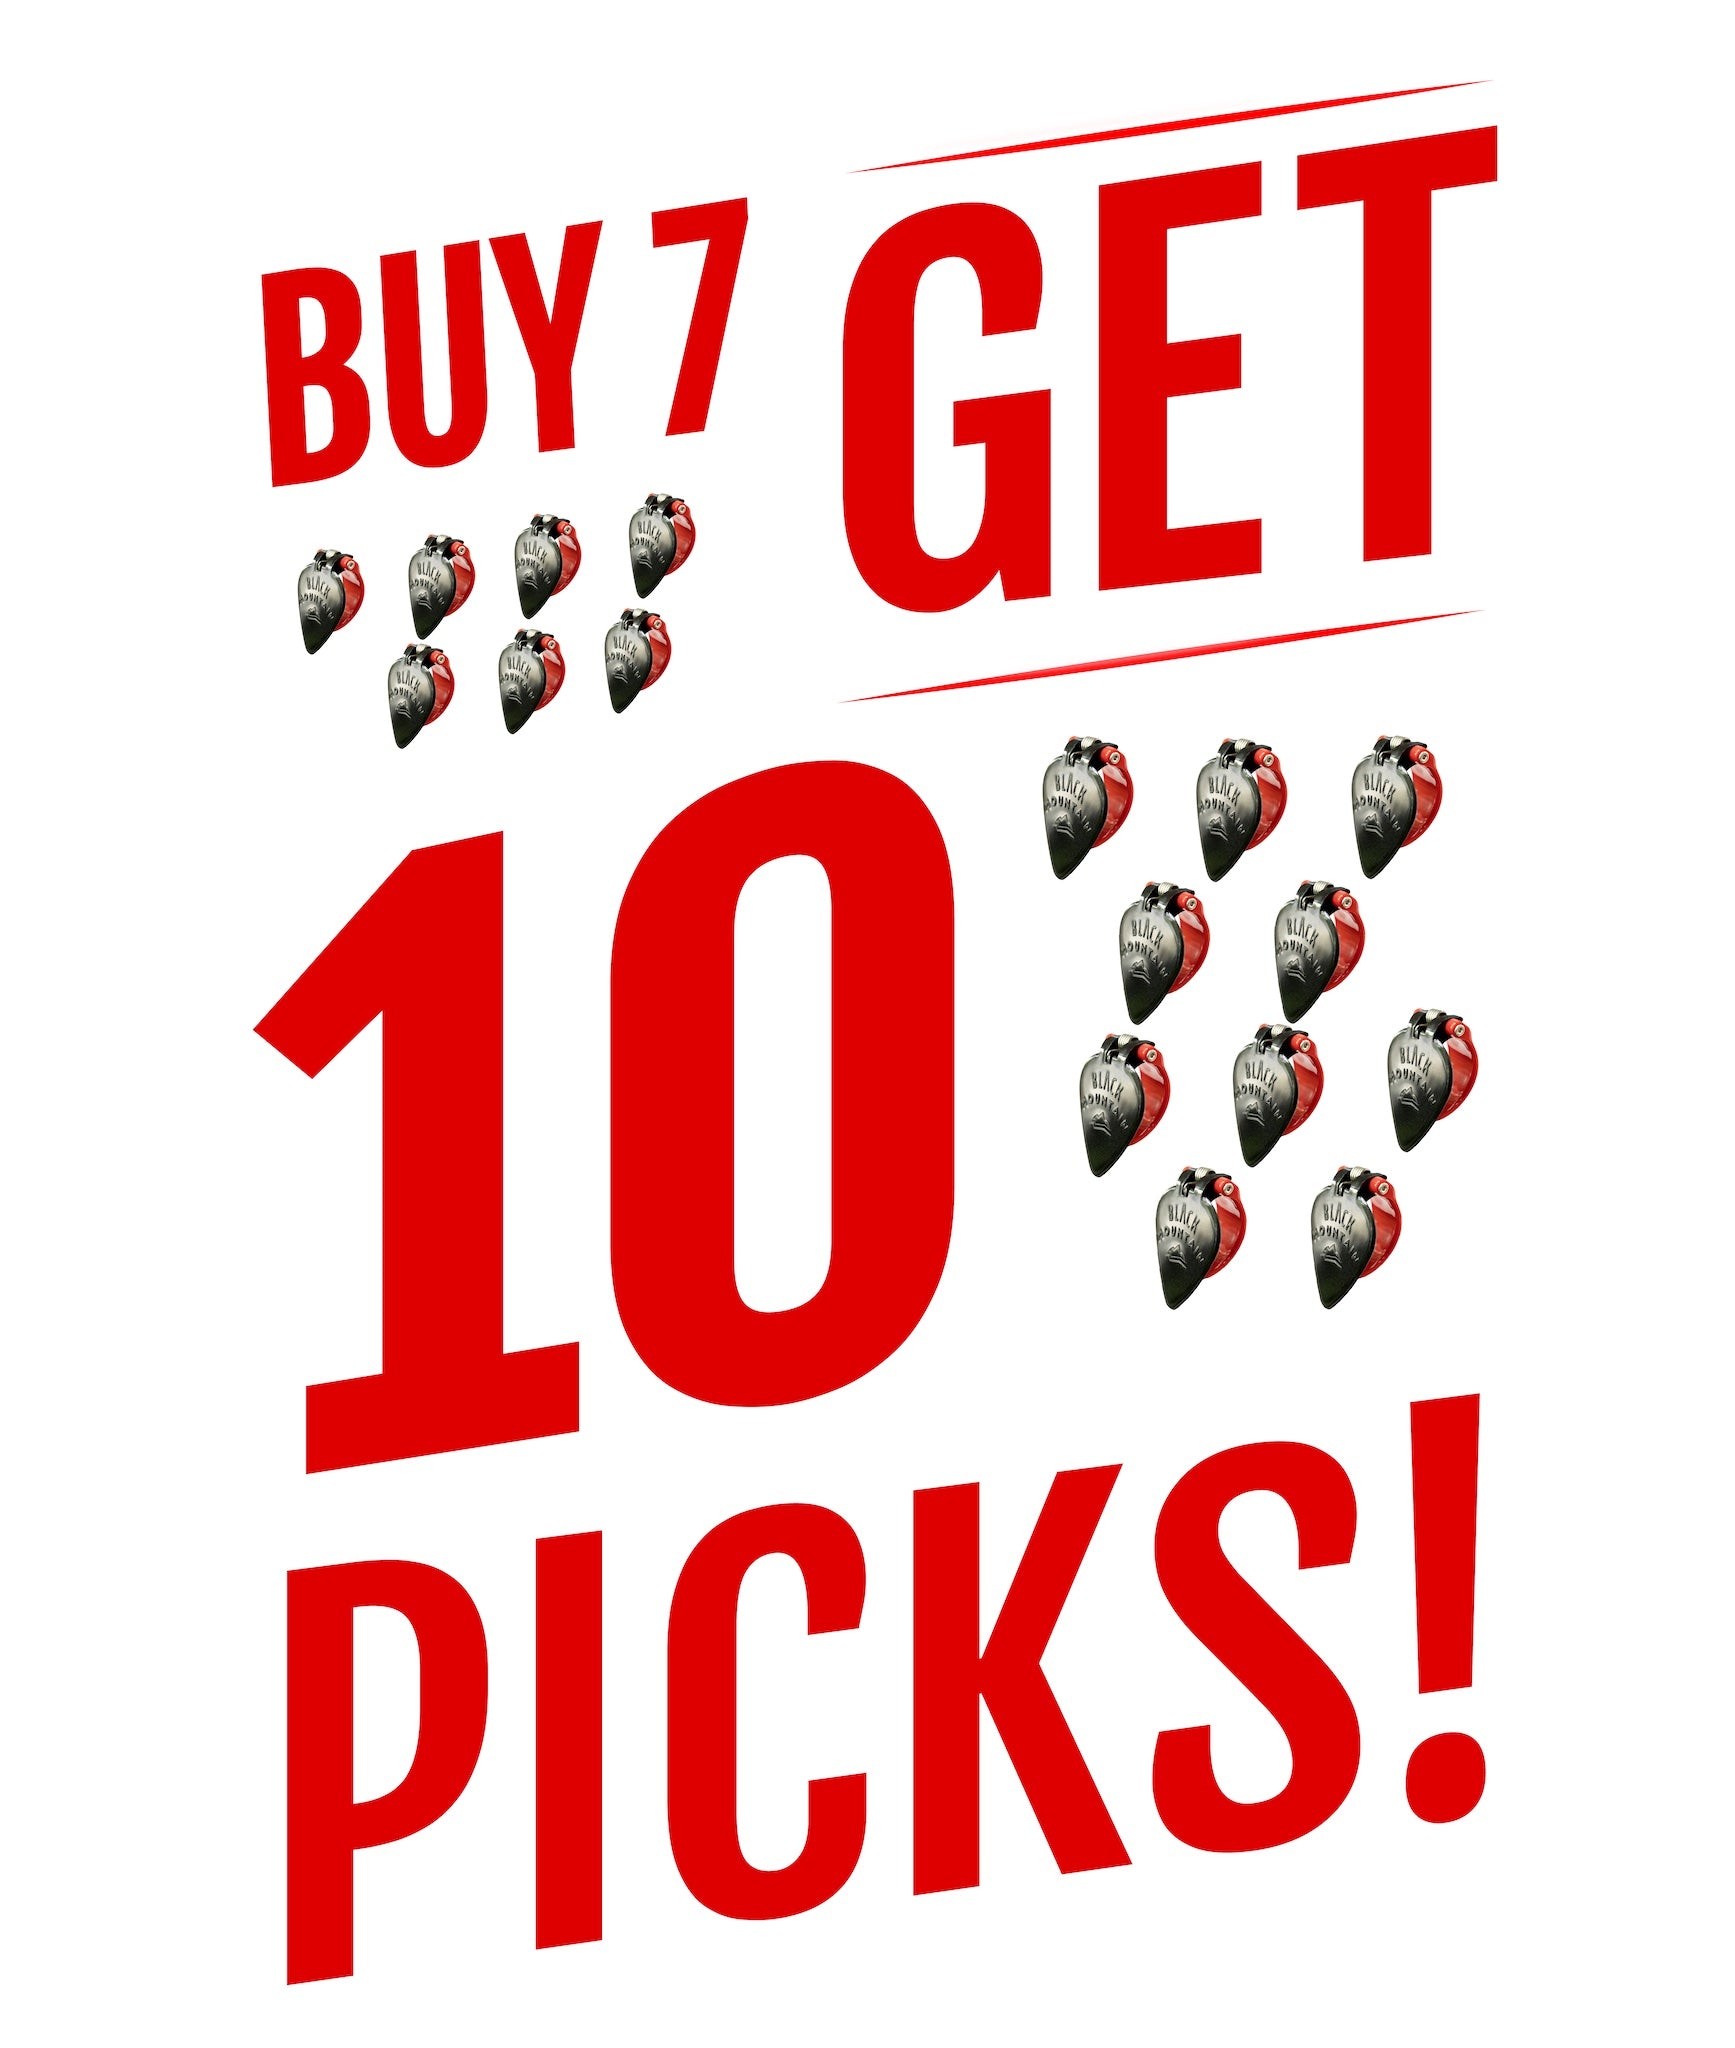 Buy 7 Thumb Picks, Get 10!